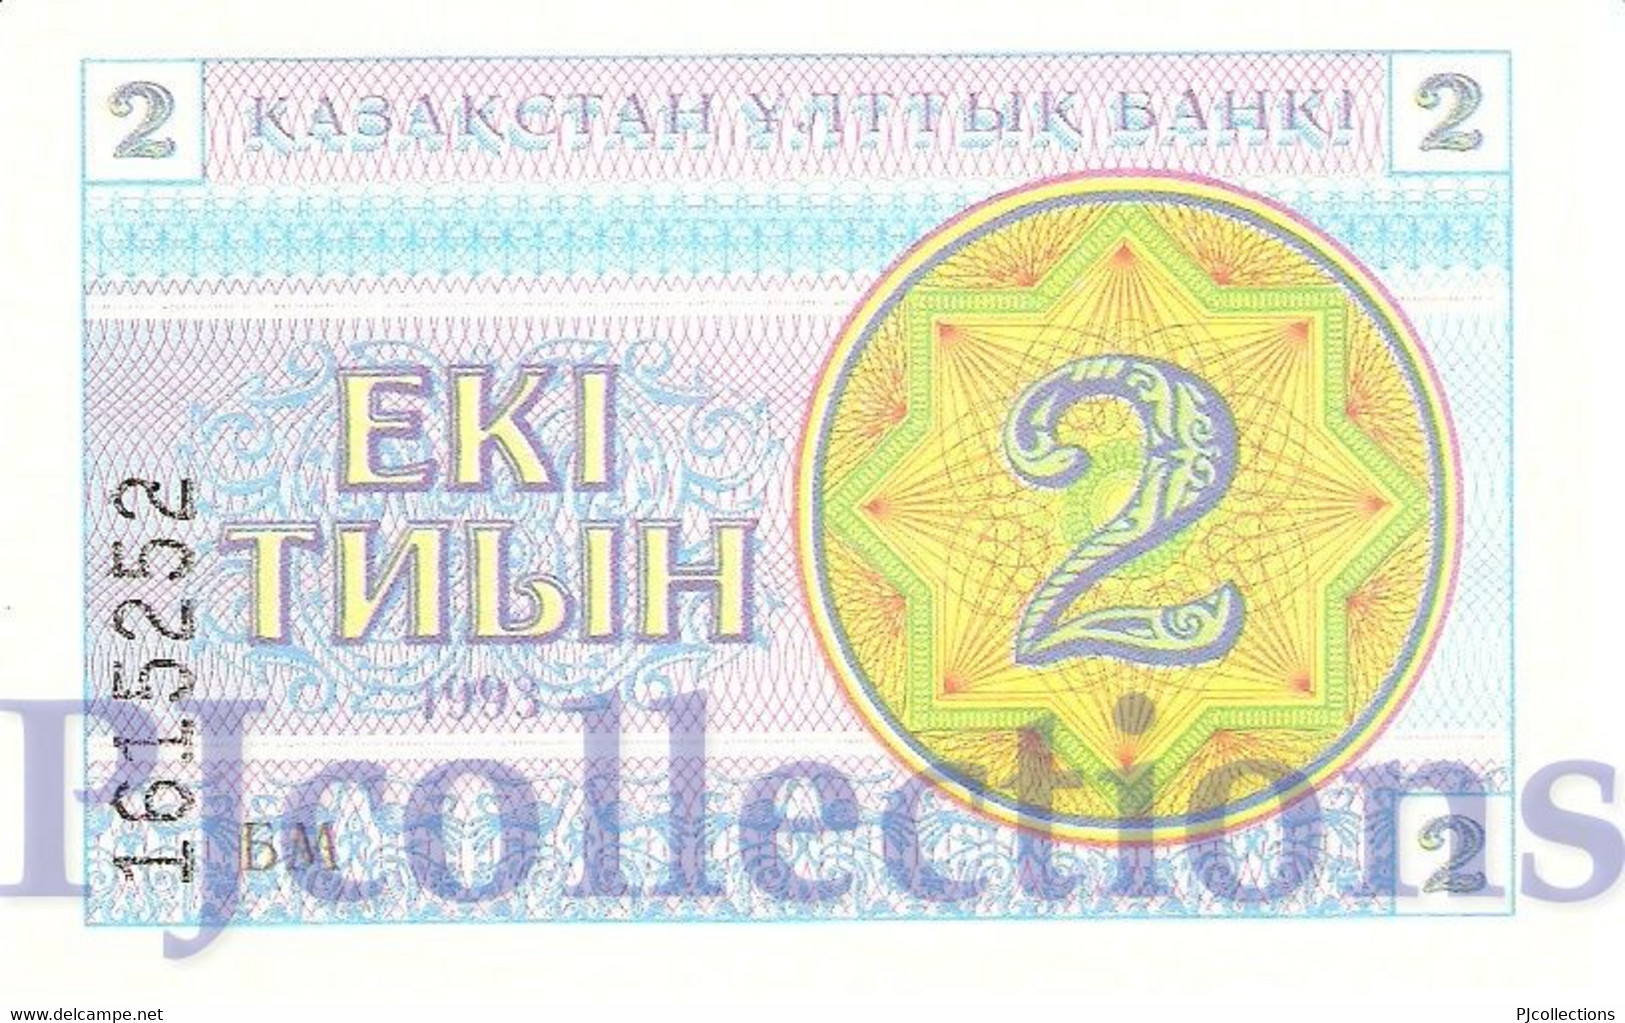 KAZAKHSTAN 2 TYIN 1993 PICK 2c UNC - Kazakhstan